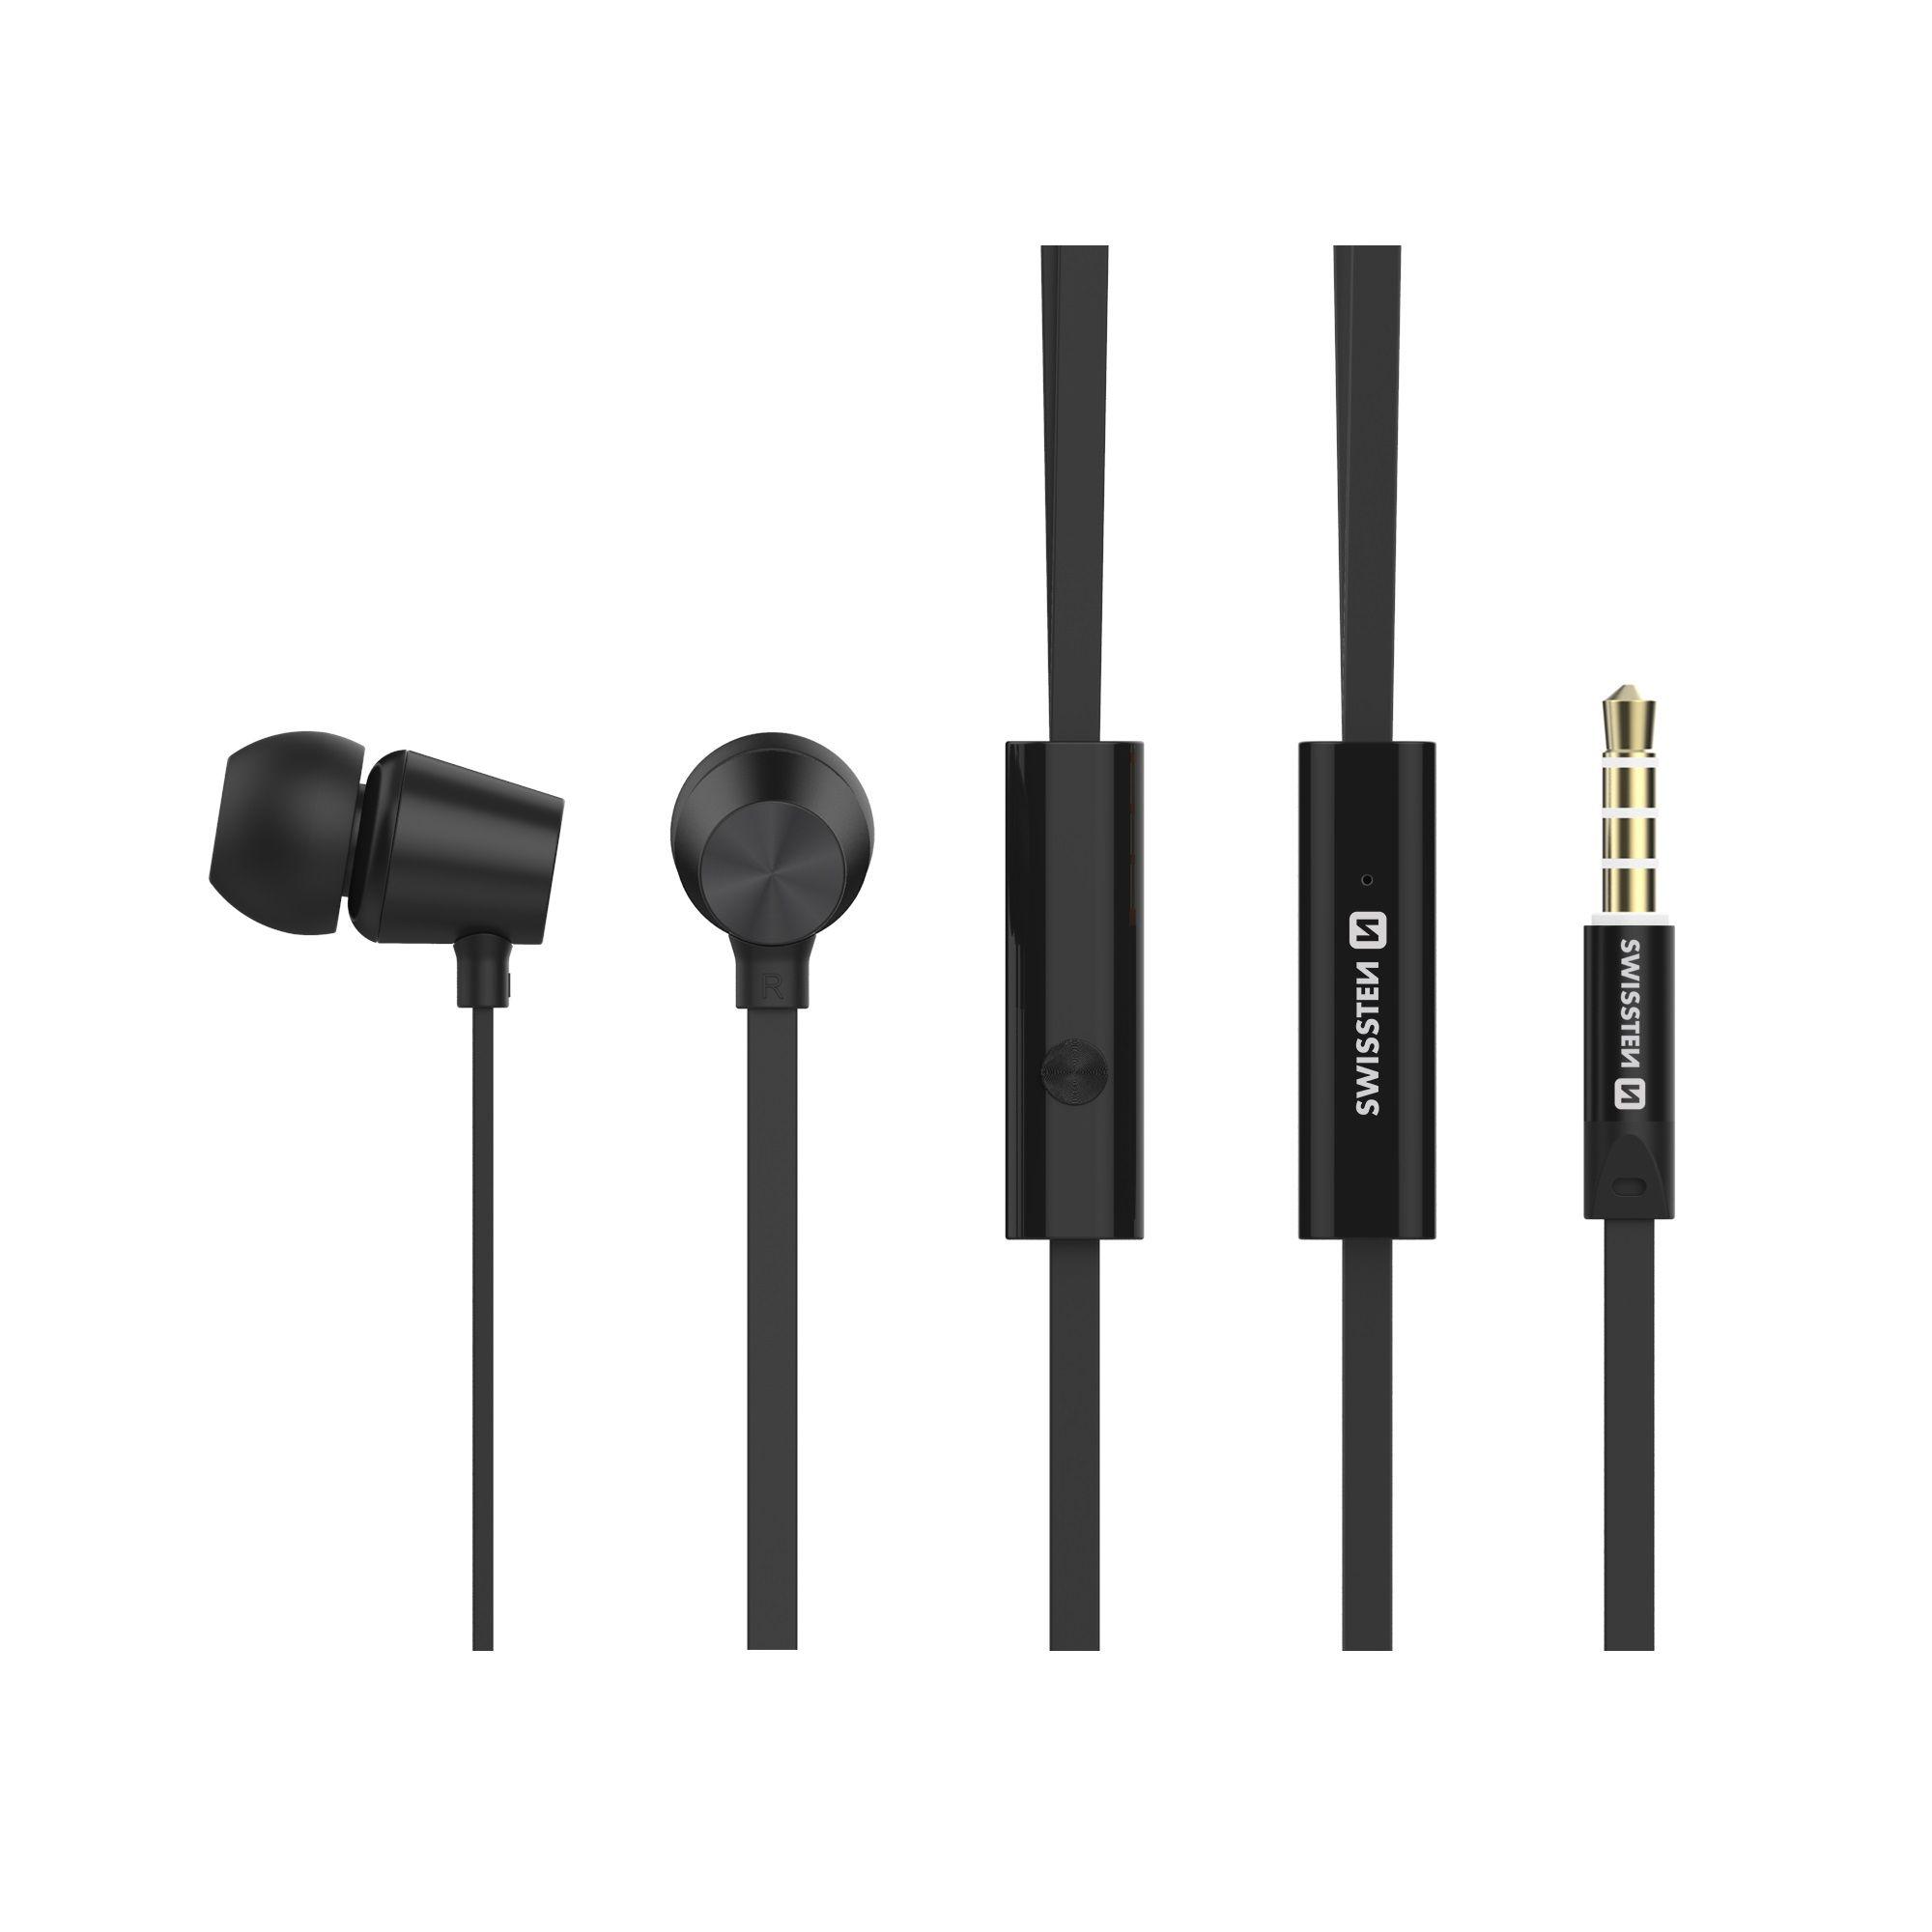 Swissten sluchátka YS500 černá - Metal Dynamic s mikrofonem pro iPhone - iPad - iPod a jiná zařízení